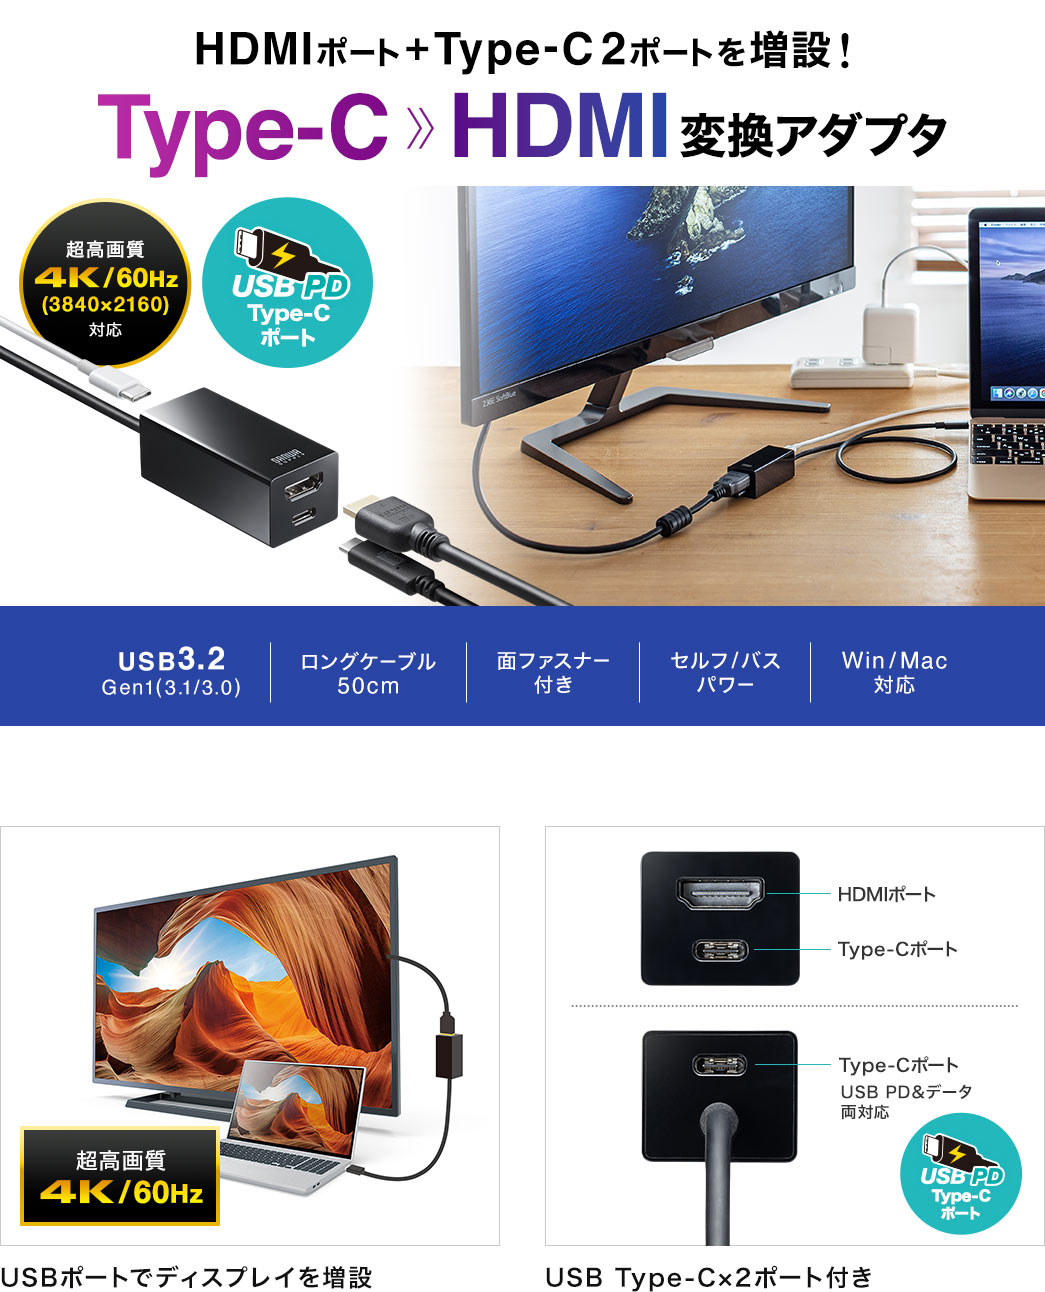 HDMI|[g{Type-C 2|[g𑝐݁@Type-C-HDMIϊA_v^ USB|[gŃfBXvC𑝐 USB Type-C~2|[gt